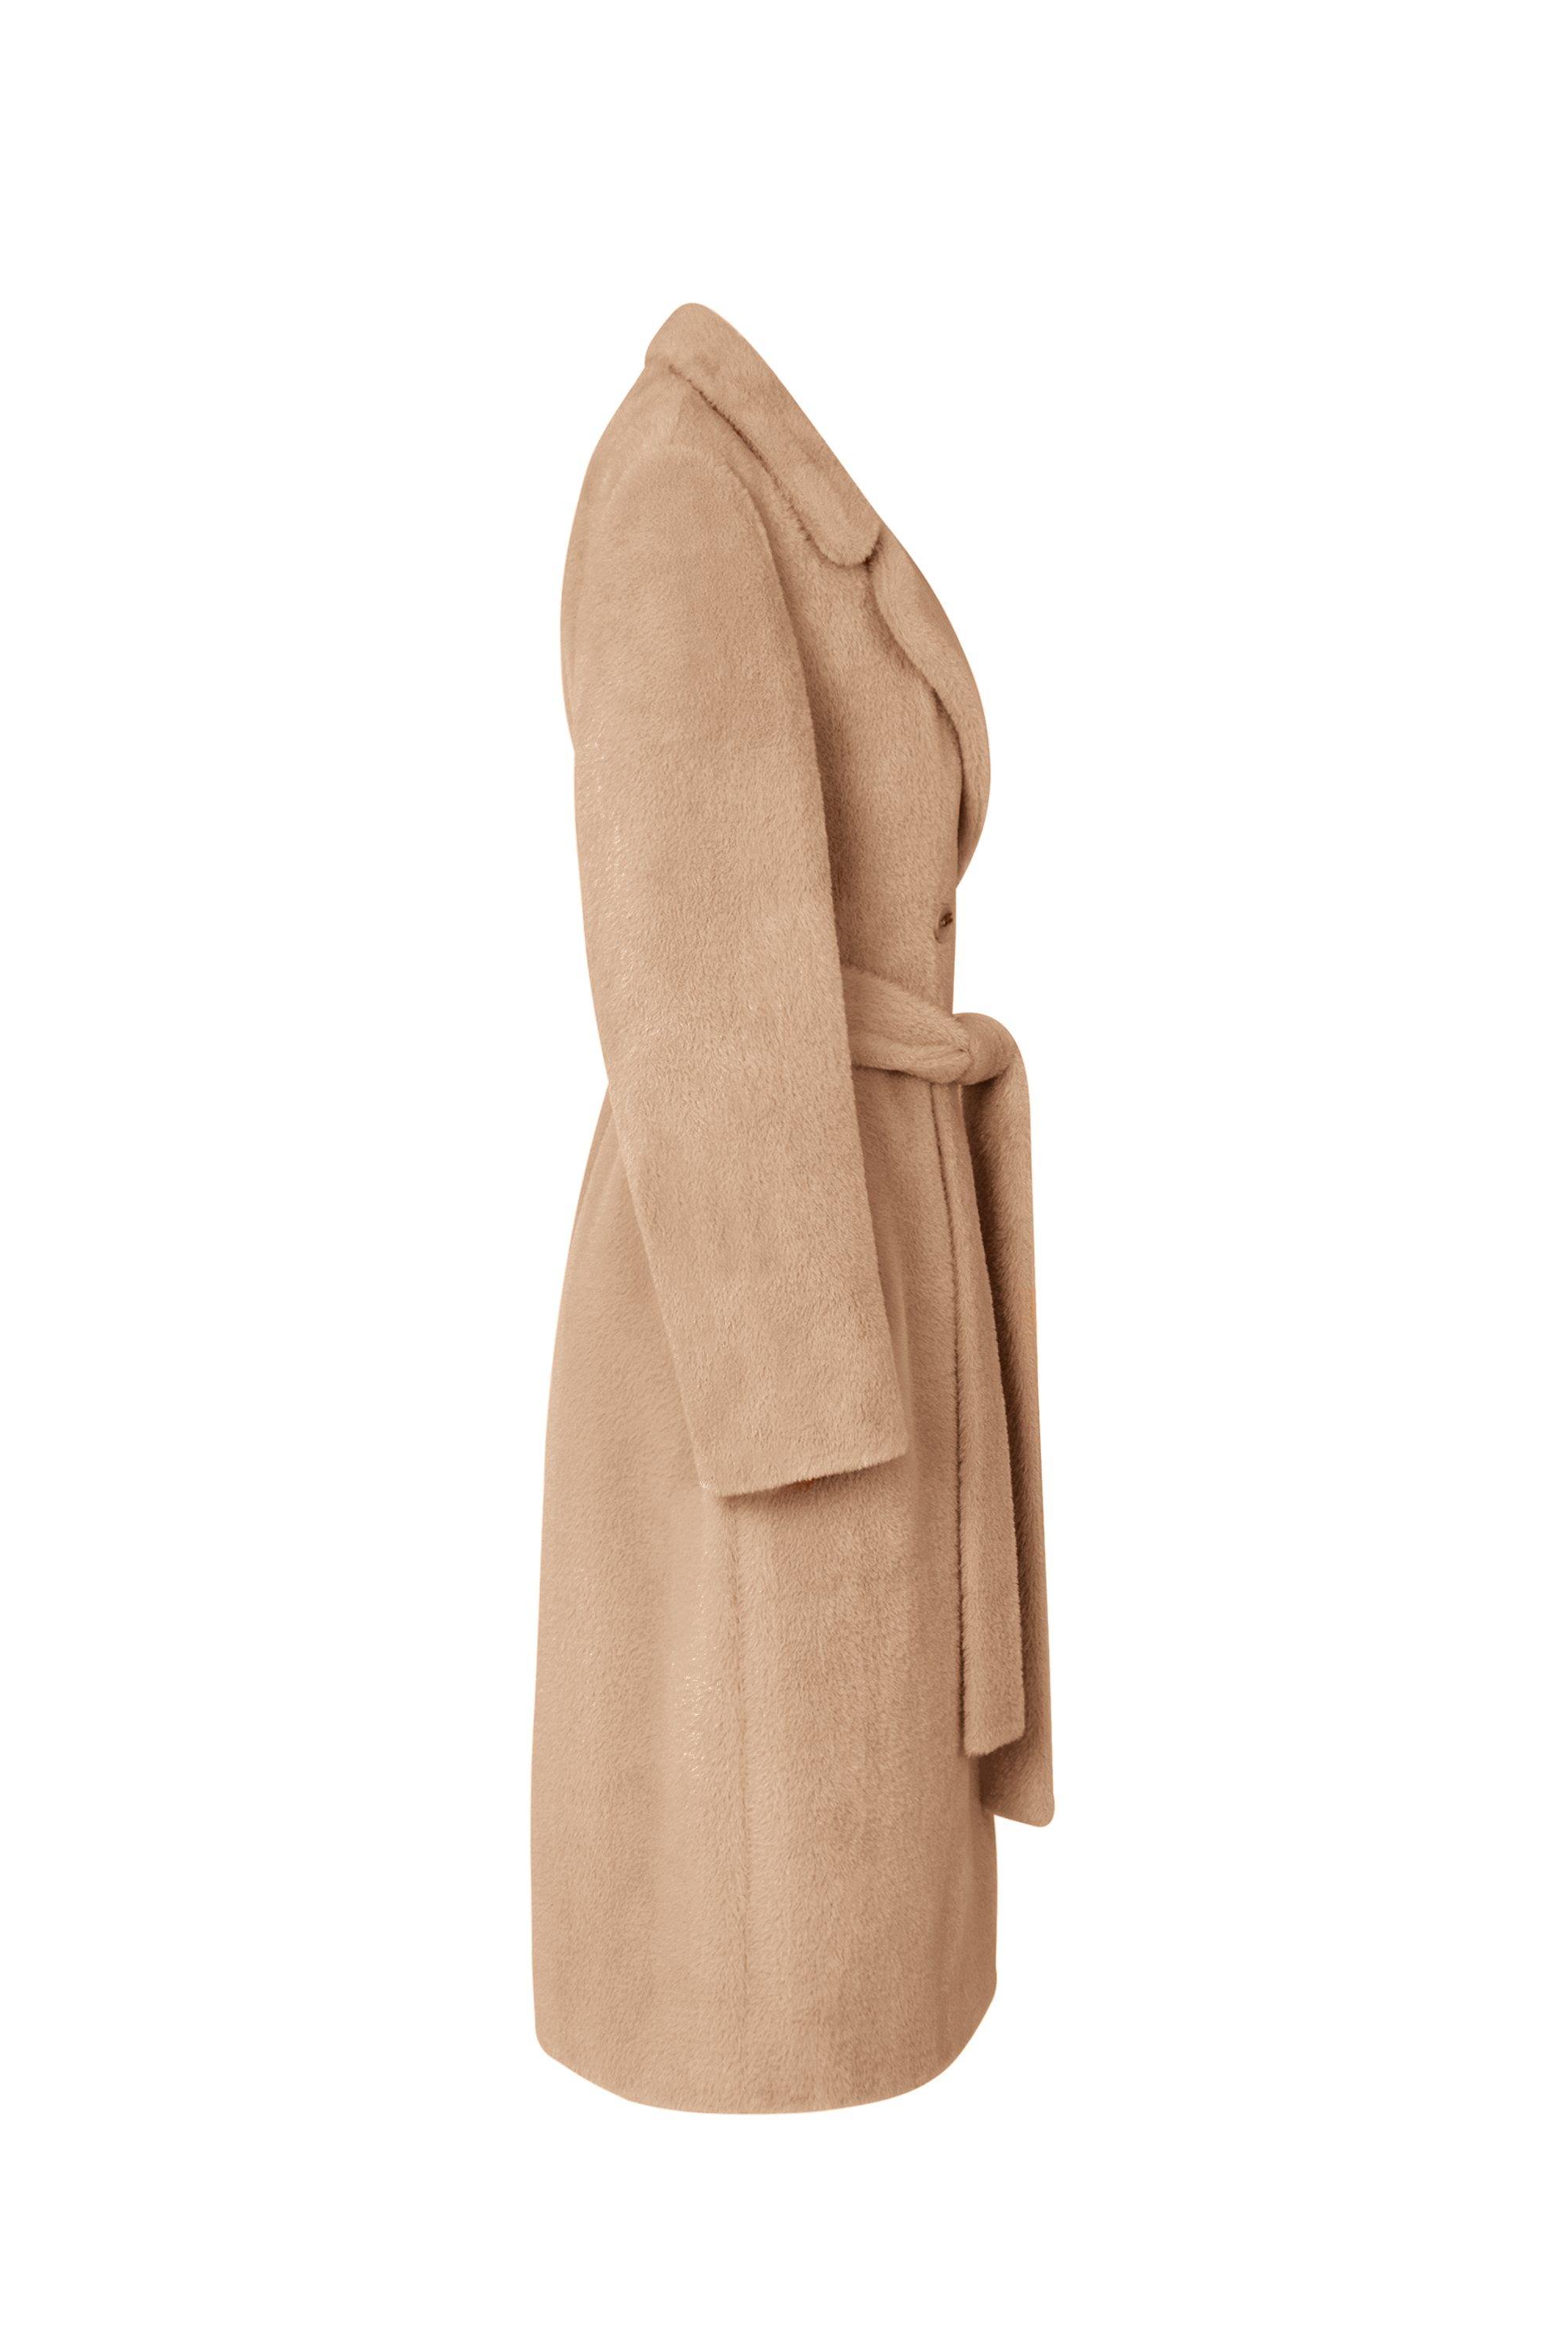 Пальто женское демисезонное 1-13053-1